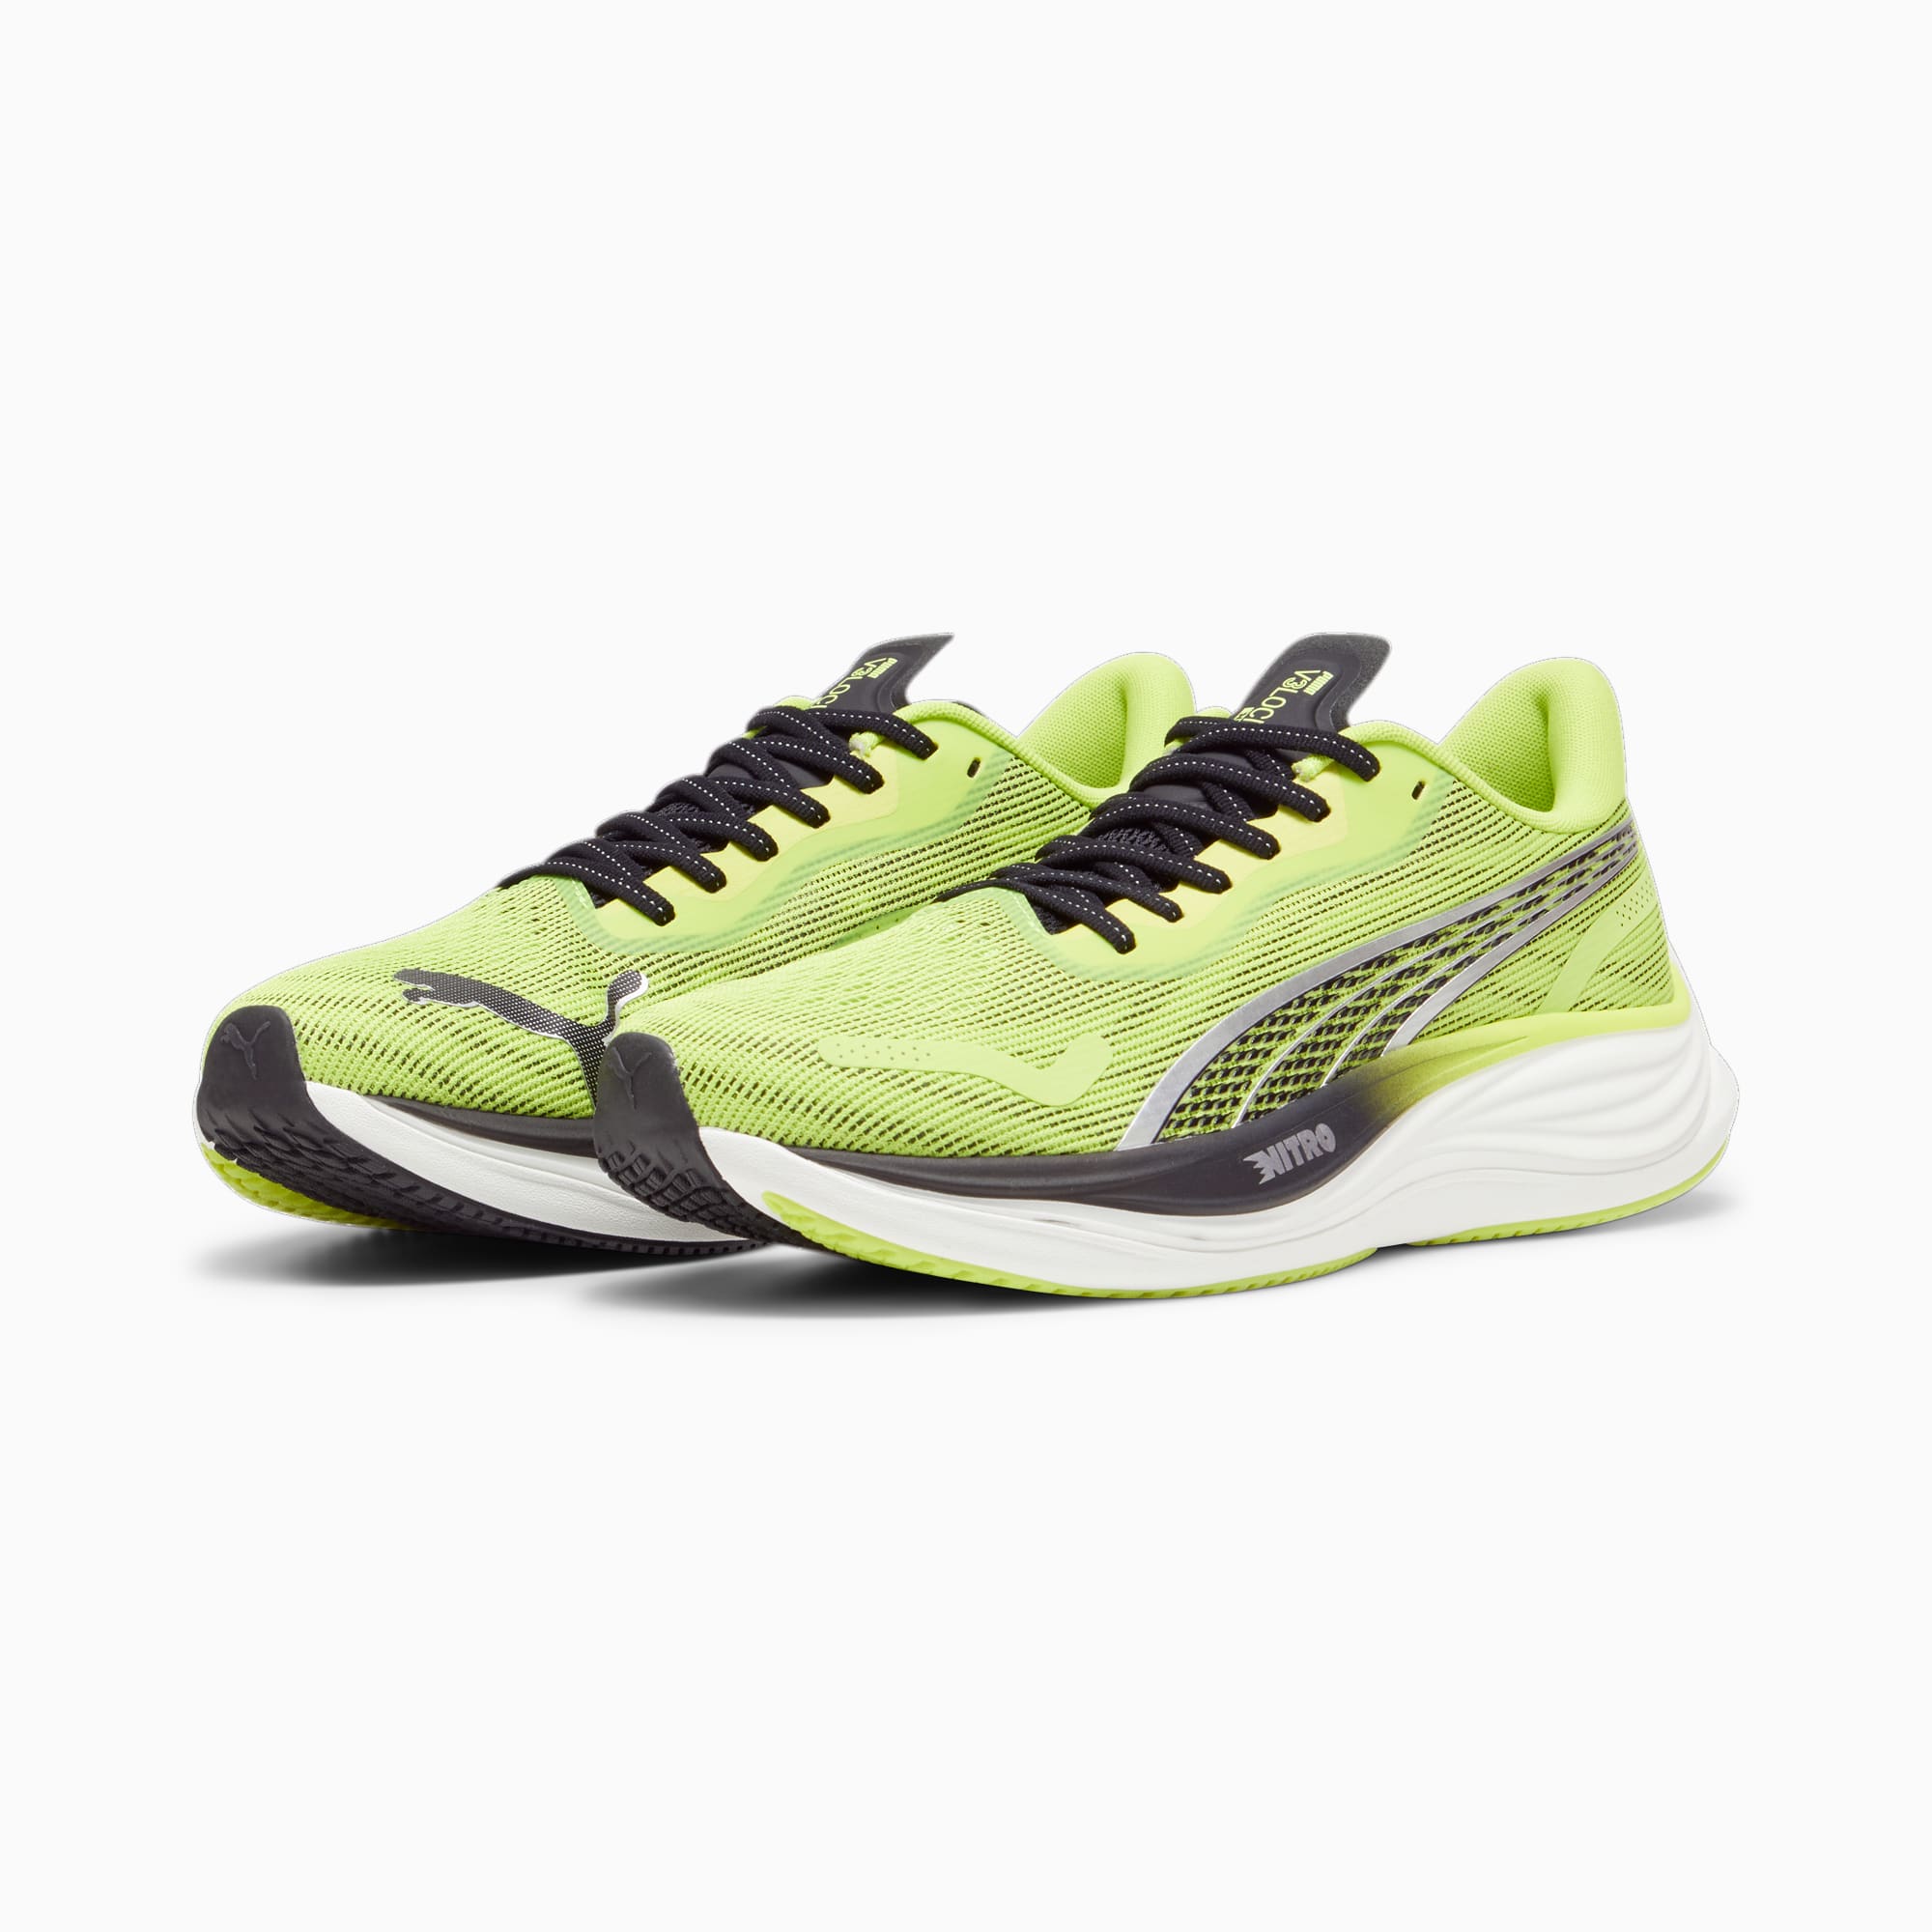 PUMA Chaussures De Running Velocity NITRO™ 3 Pour Homme, Vert/Noir/Argent